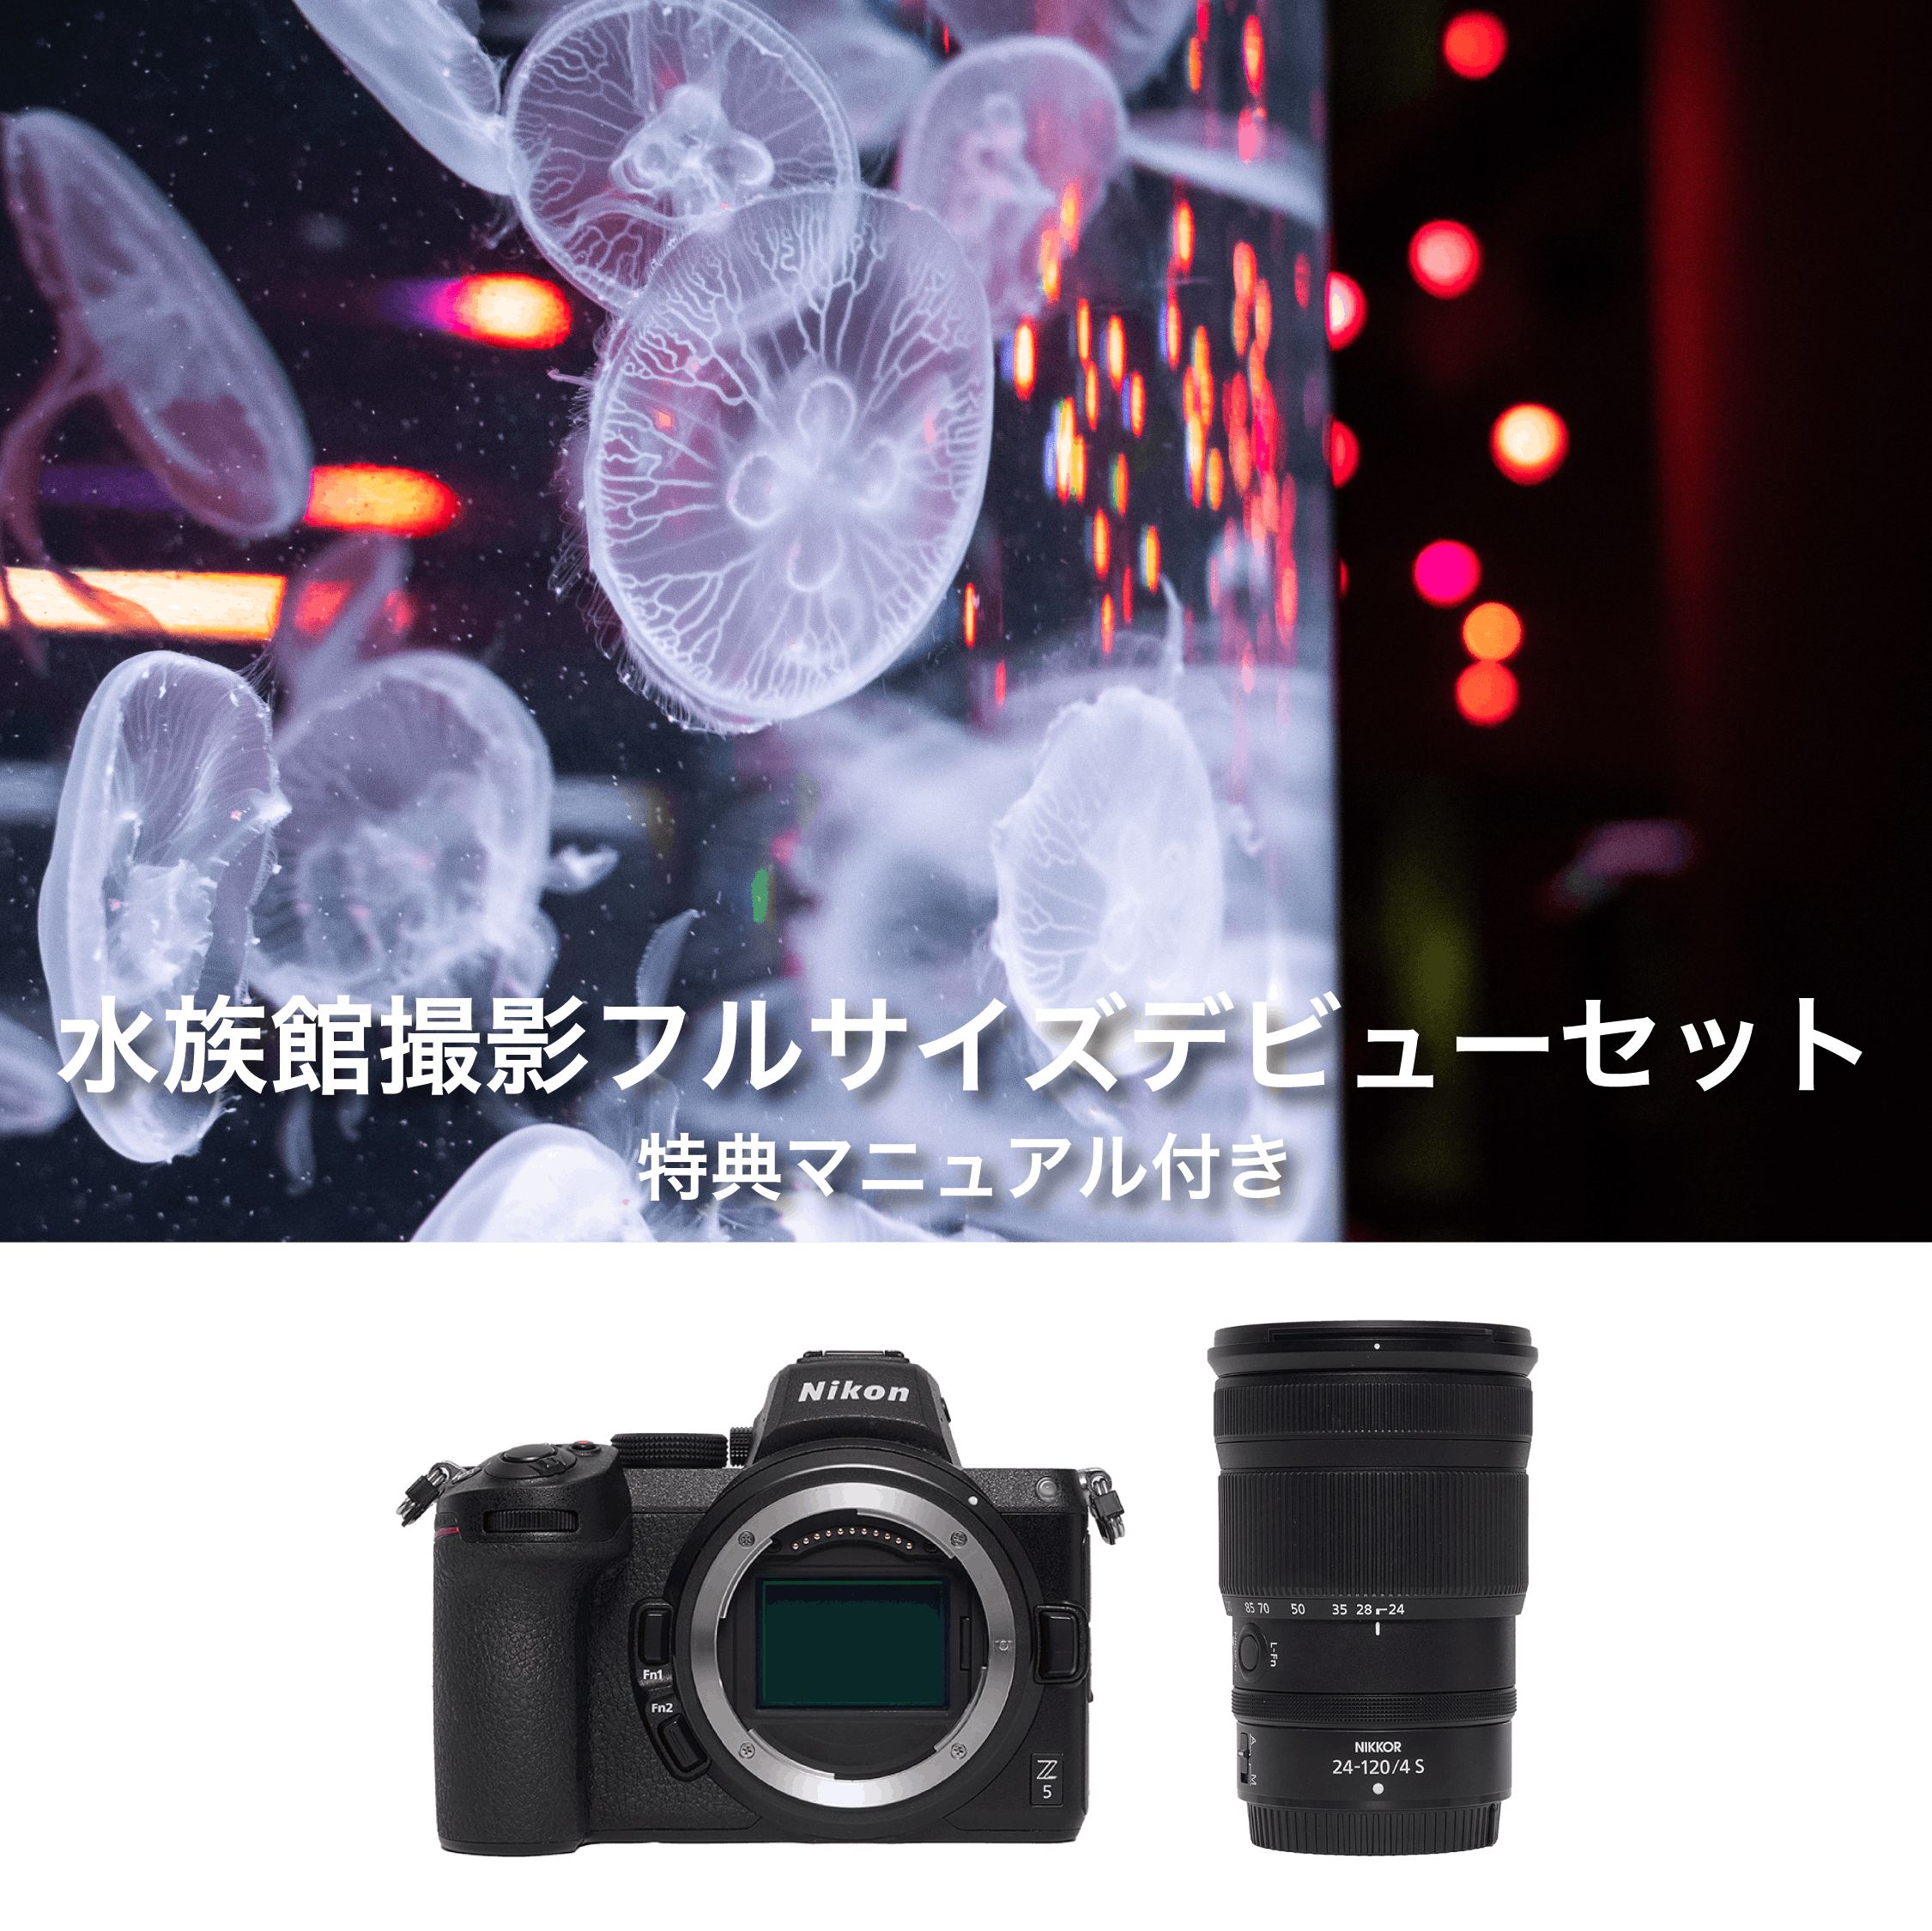 レンタル - Nikon 水族館フルサイズデビューセット(特典マニュアル付き